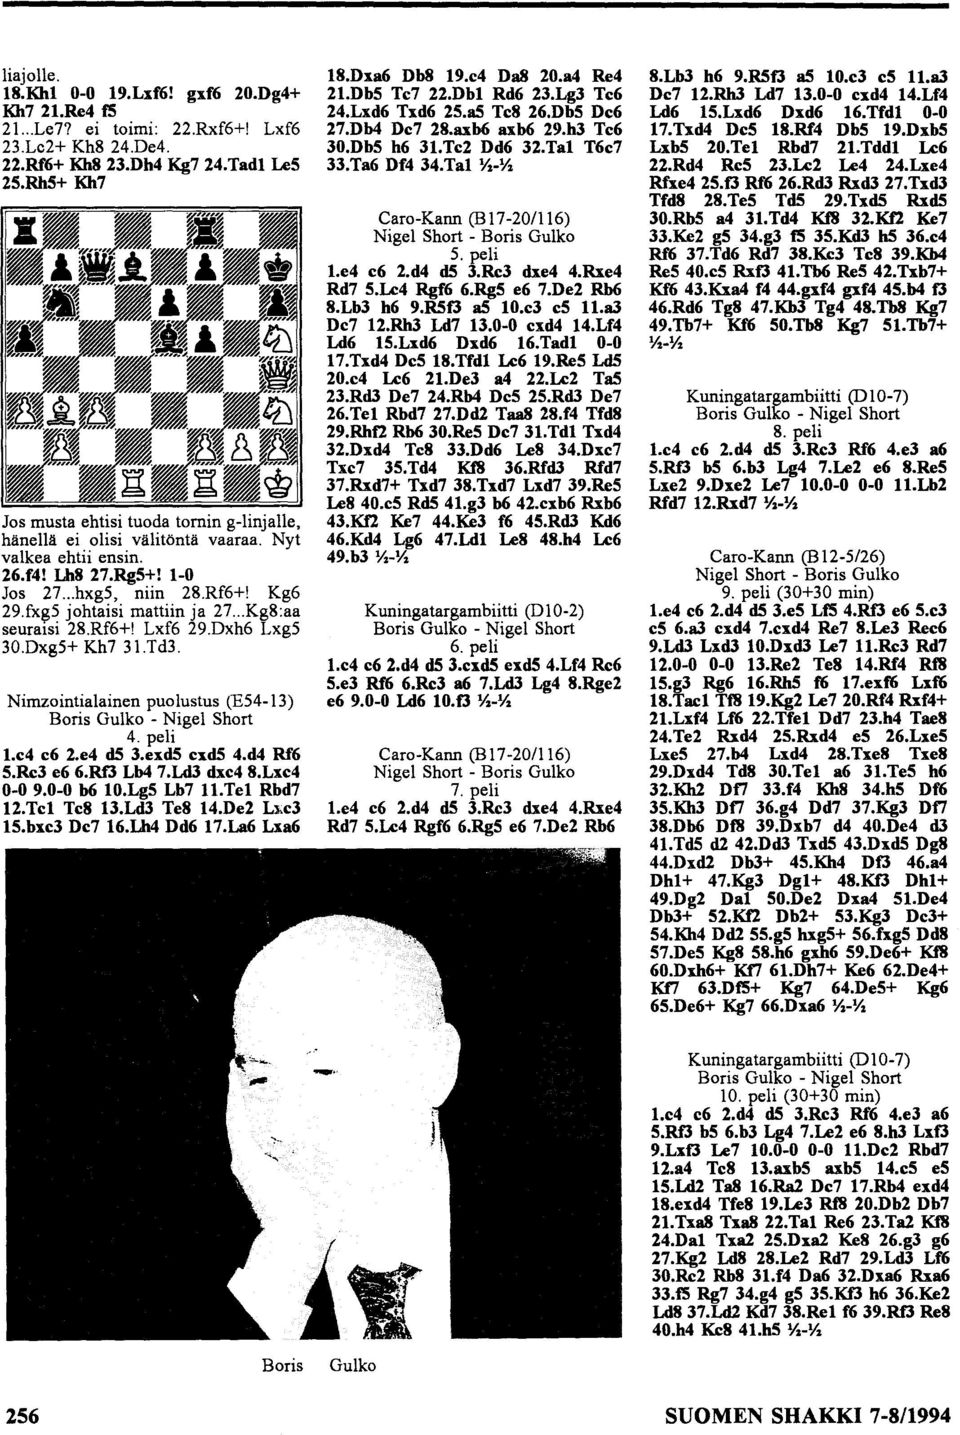 .. Kg8:aa seuralsi 28.Rf6+! Lxf6 29.Dxh6 Lxg5 30.Dxg5+ Kh7 31.Td3. Nimzointialainen puolustus (E54-13) Boris Gulko - Nigel Short 4. peli 1.e4 e6 2.e4 d5 3.exd5 cxd5 4.d4 Rf6 5.Re3 e6 6.Rf3 Lb4 7.